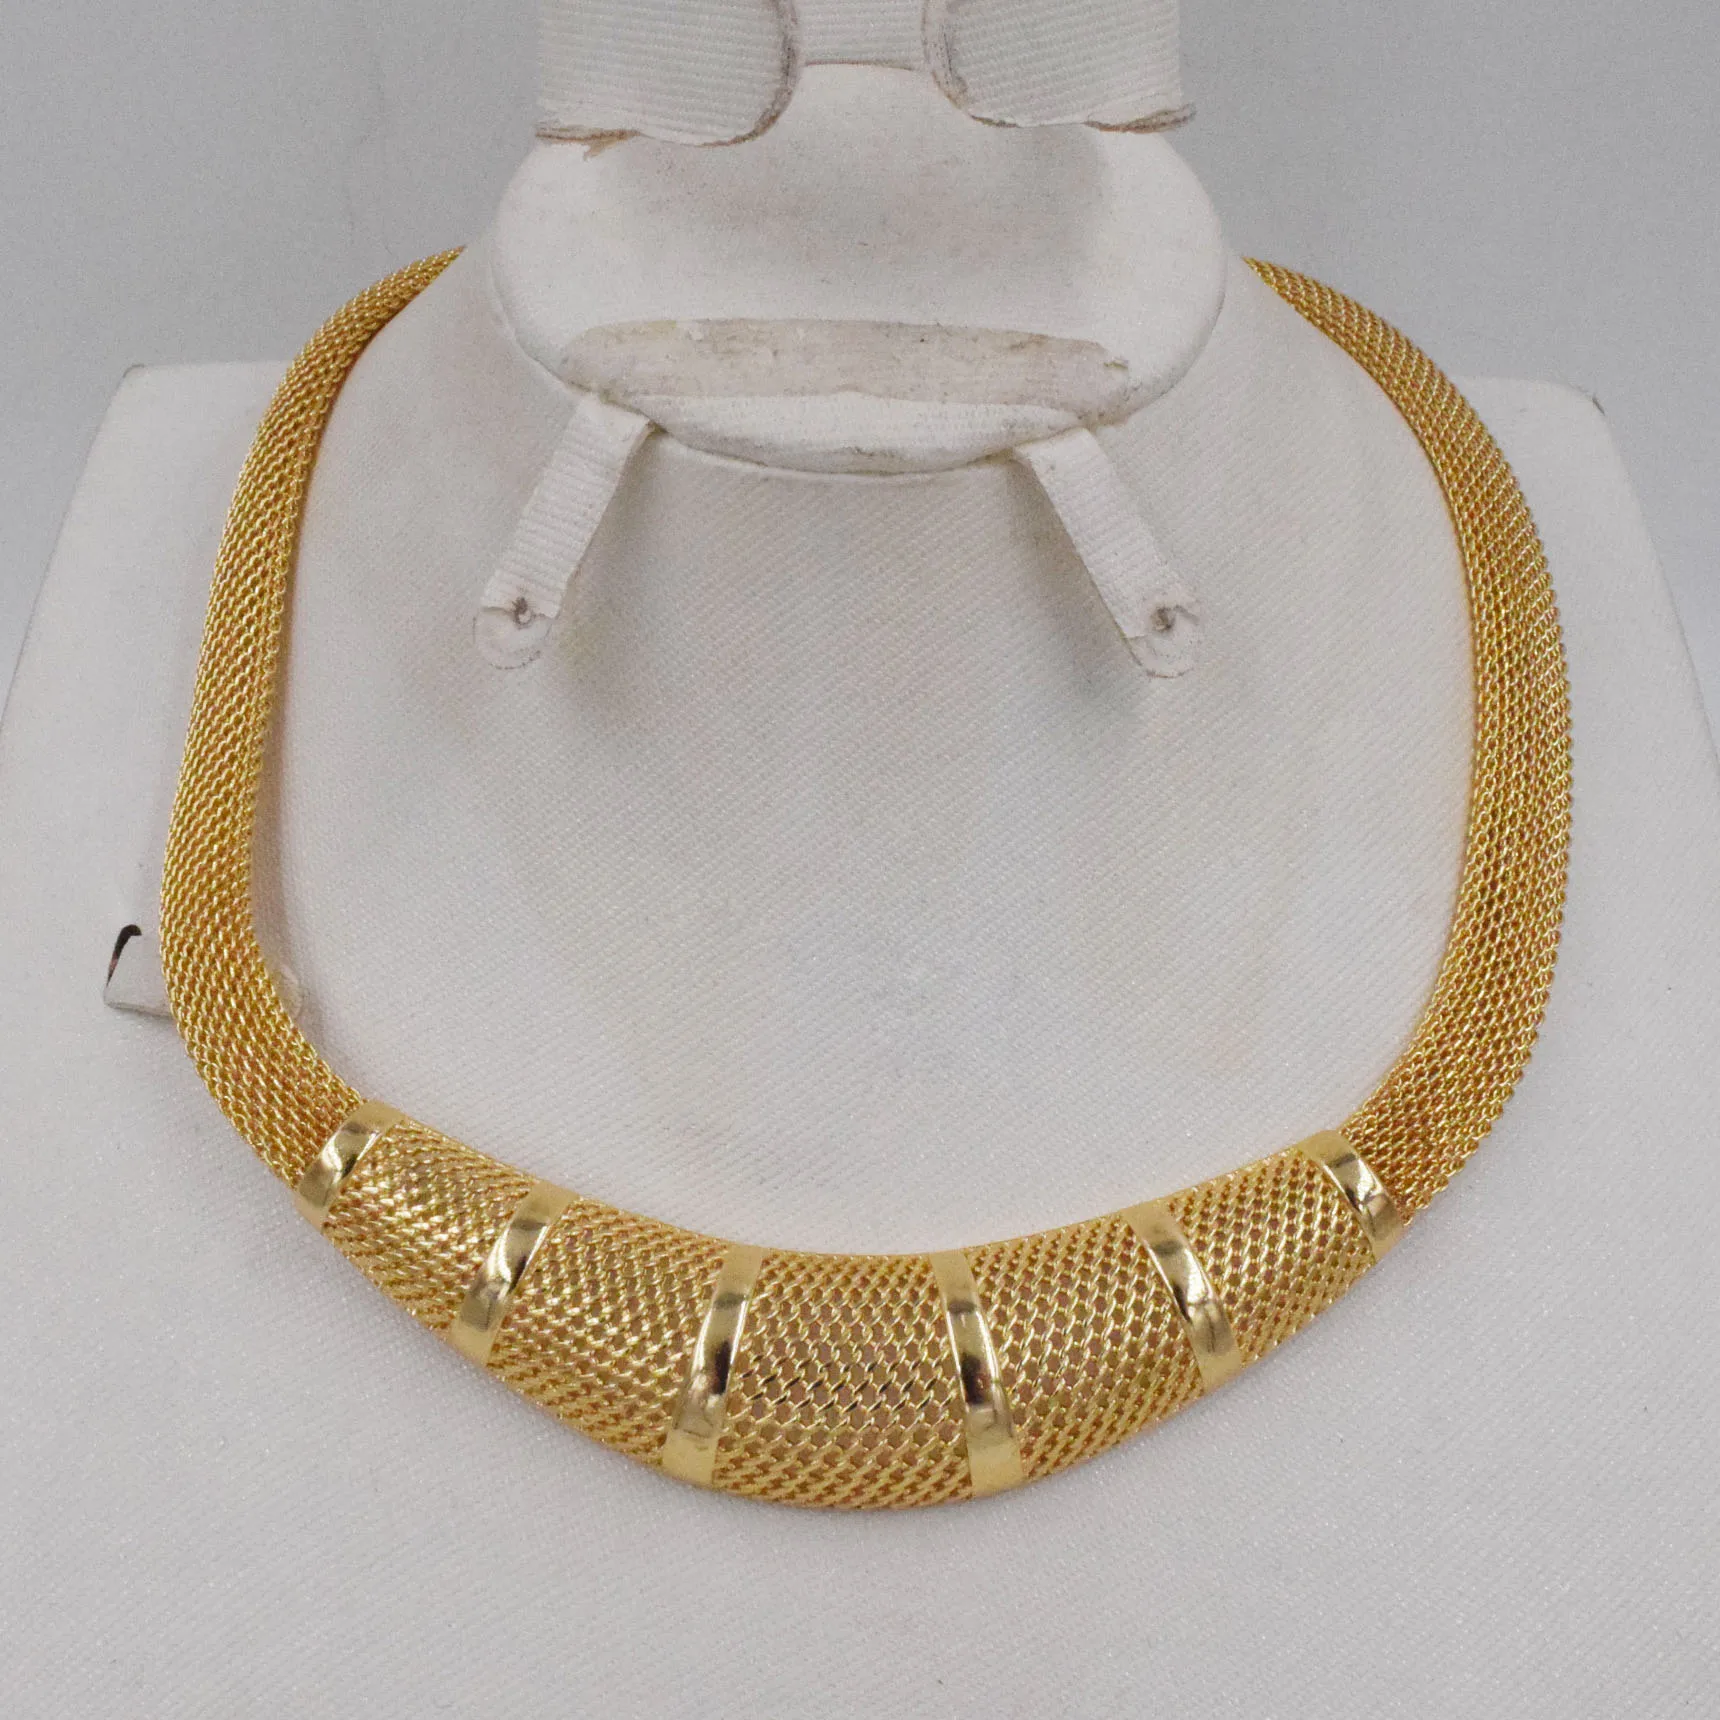 Новый стиль высокого качества Ltaly 750 золотого цвета, набор украшений для женщин, ювелирные изделия из африканских бусин, модные ожерелья, сер... от AliExpress WW